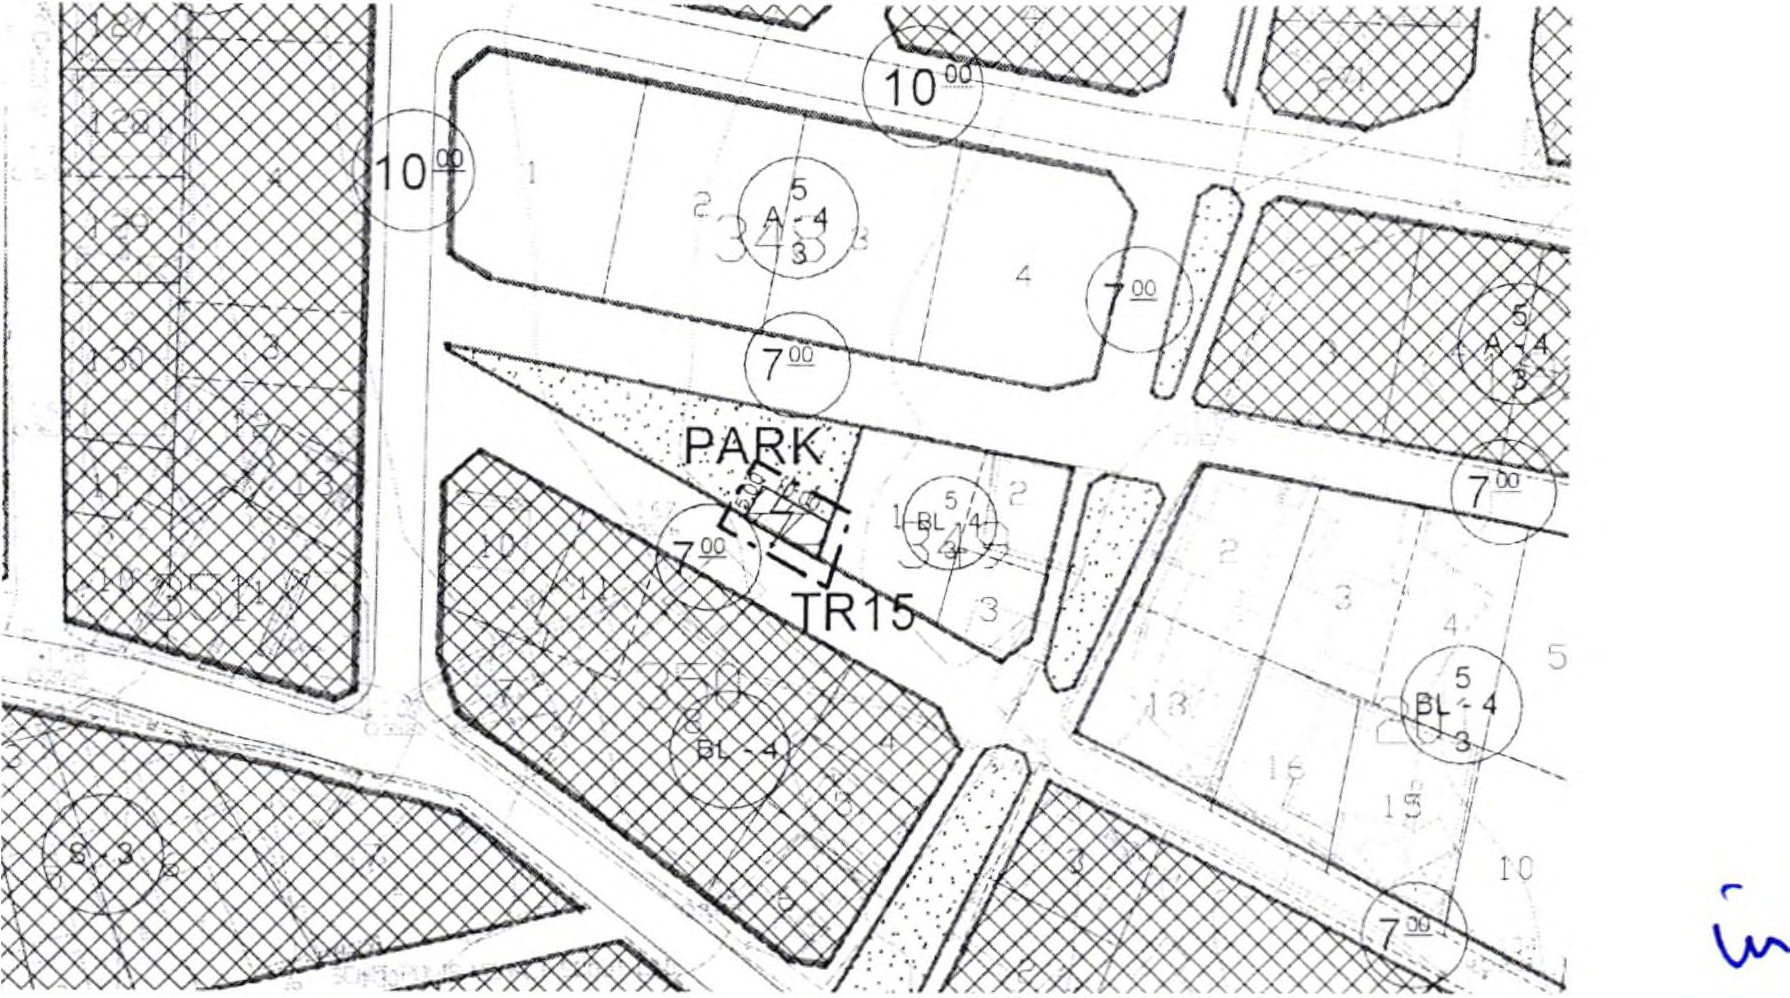 TR15 Nolu Trafo Alanı yer seçimi için, mevcut plana göre O32-C-09-D-4-C paftasında yer alan 349 nolu adanın batısında bulunan park alanında trafo alanı önerilmiştir.